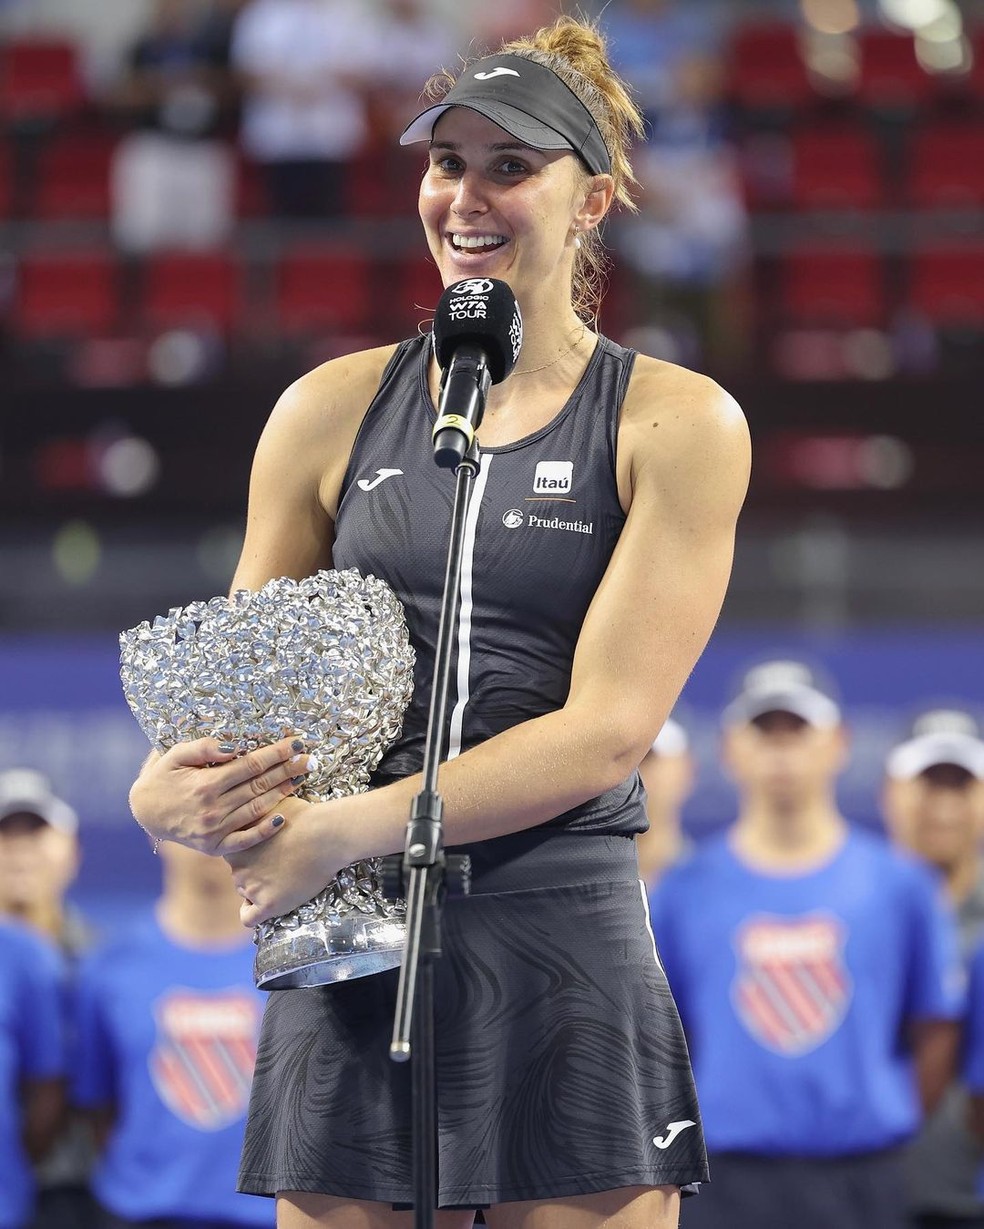 Tênis: Bia Haddad supera ex-top-10 e estreia com vitória no WTA Elite  Trophy, Esportes